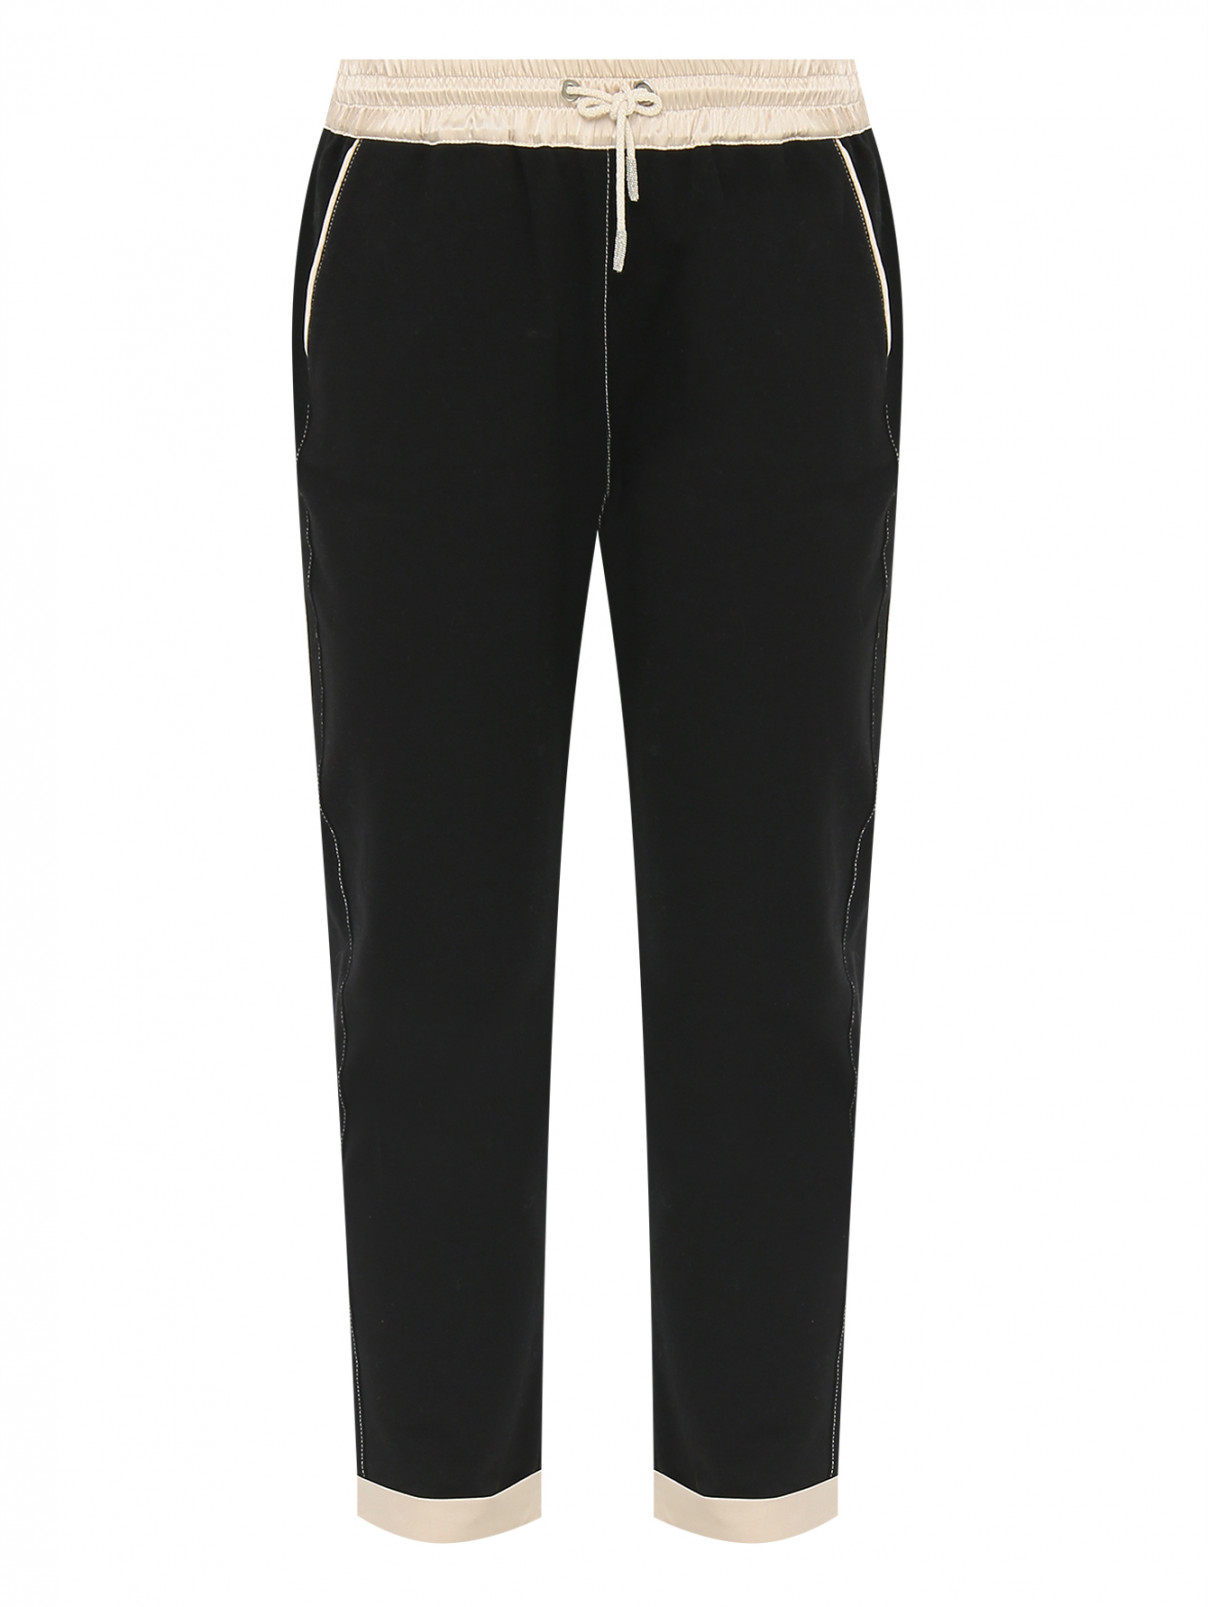 Трикотажные брюки на резинке Panicale Cashmere  –  Общий вид  – Цвет:  Черный